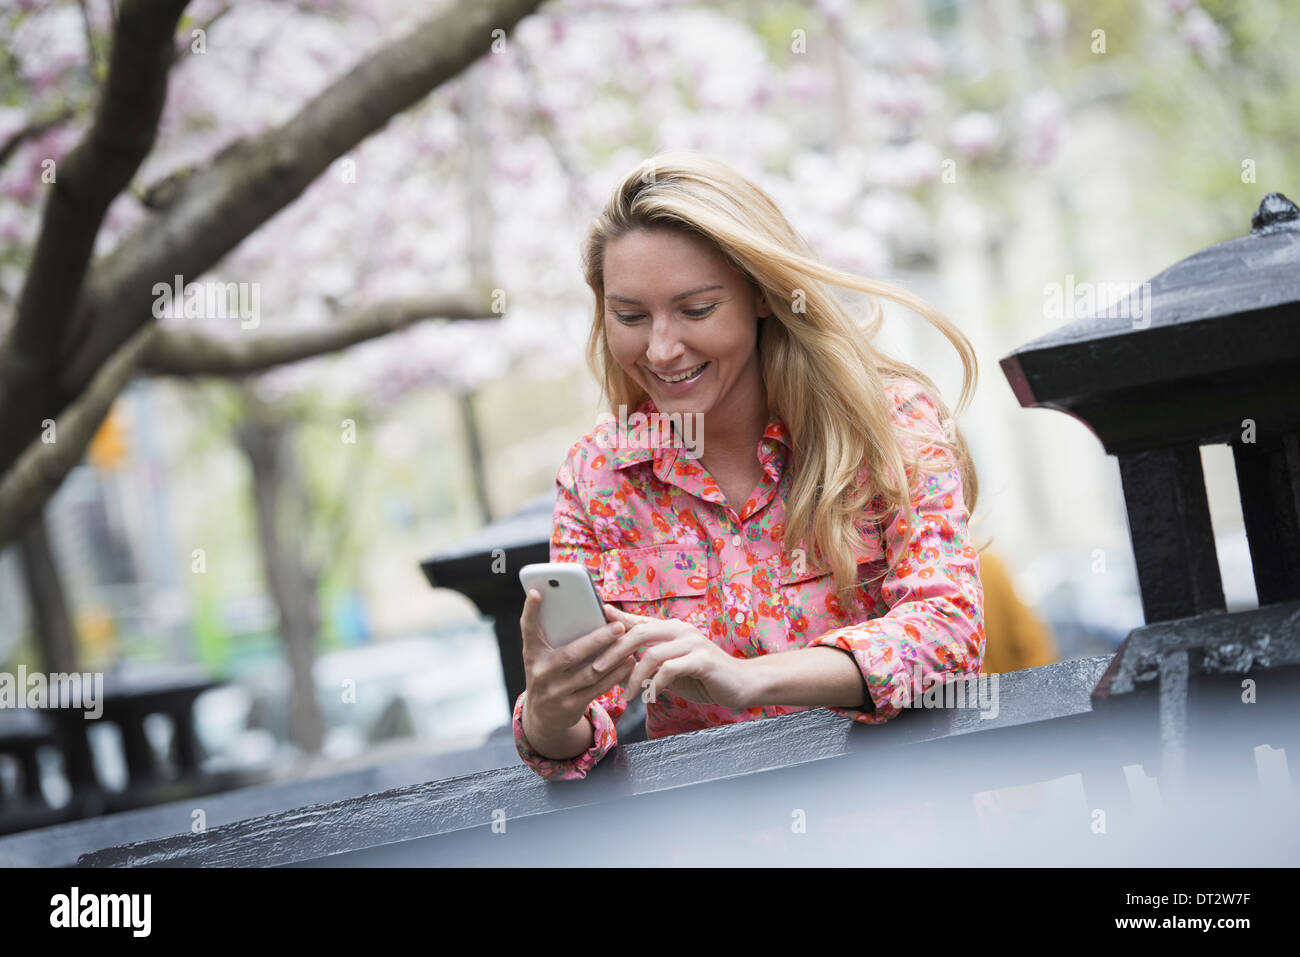 Vue sur cityA jeune femme avec de longs cheveux blonds assis dans un parc de la ville à la recherche de son smart phone Banque D'Images